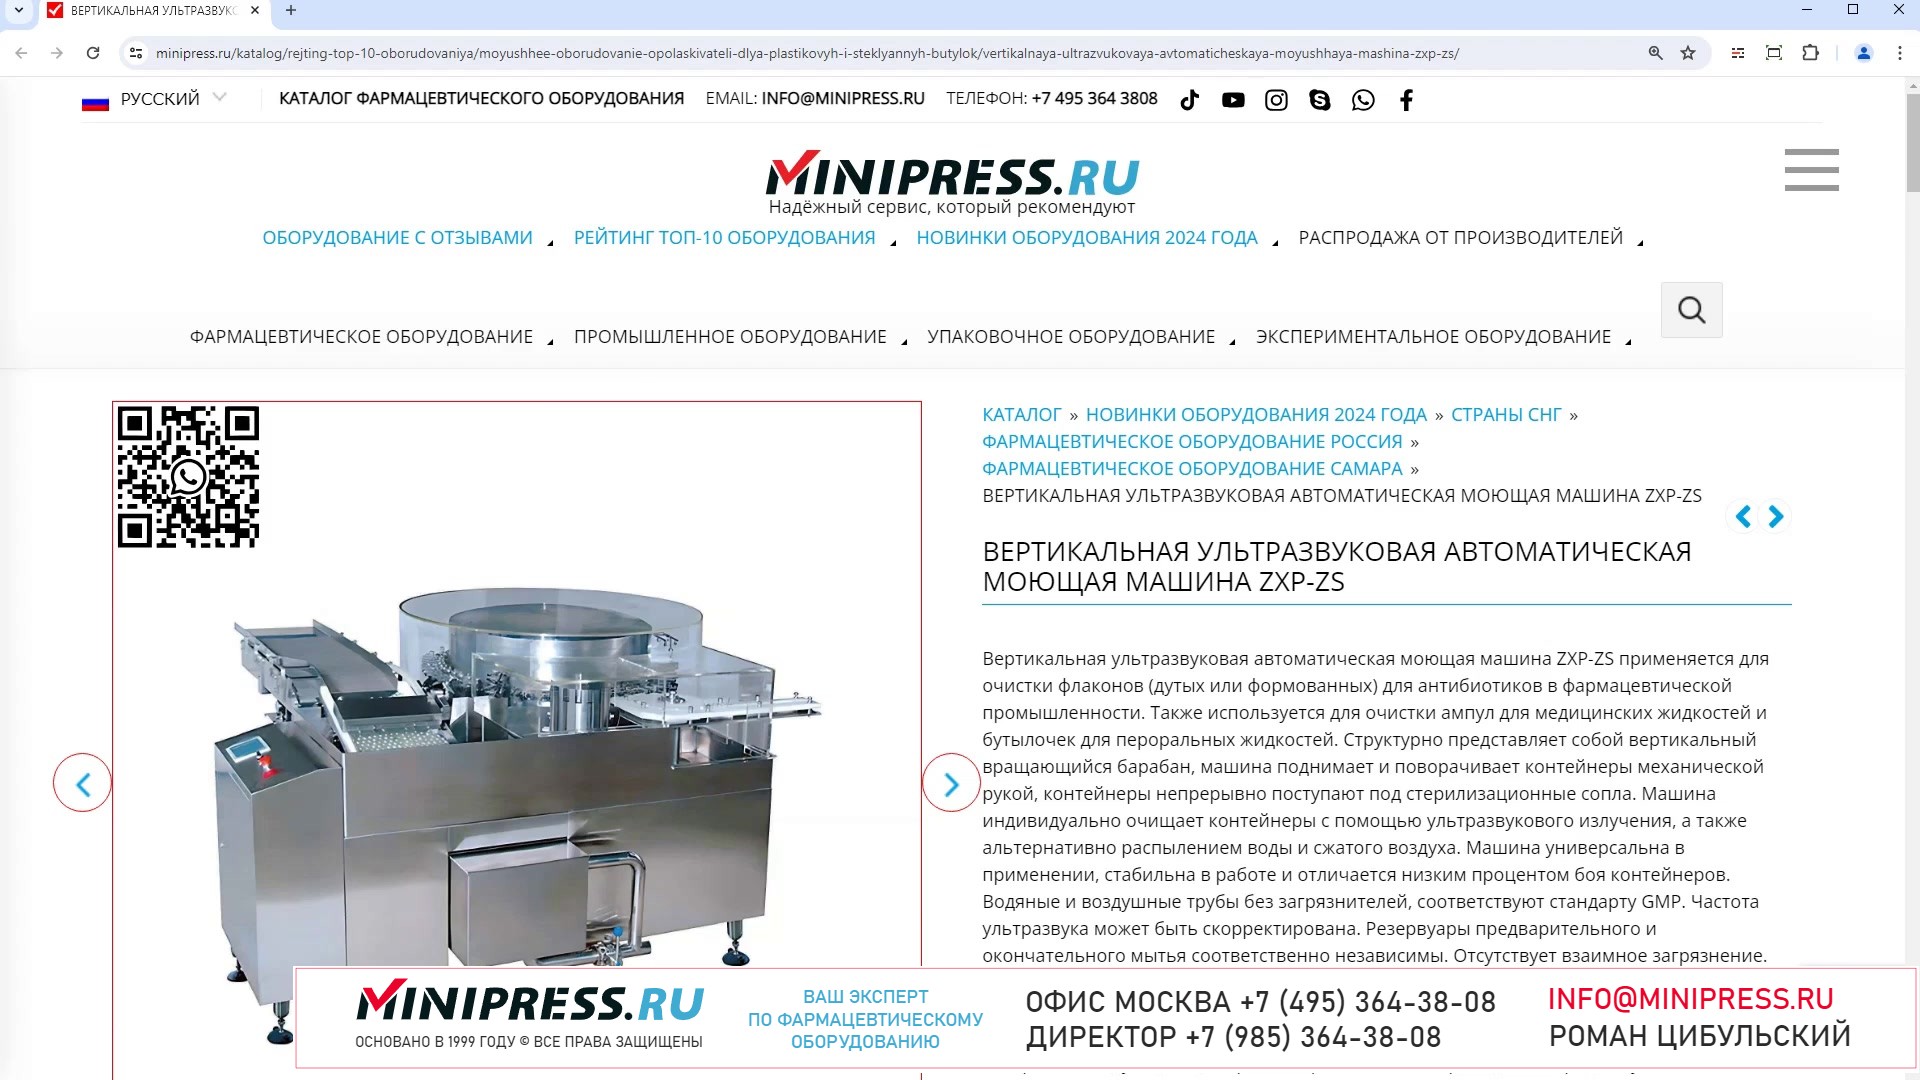 Minipress.ru Вертикальная ультразвуковая автоматическая моющая машина ZXP-ZS